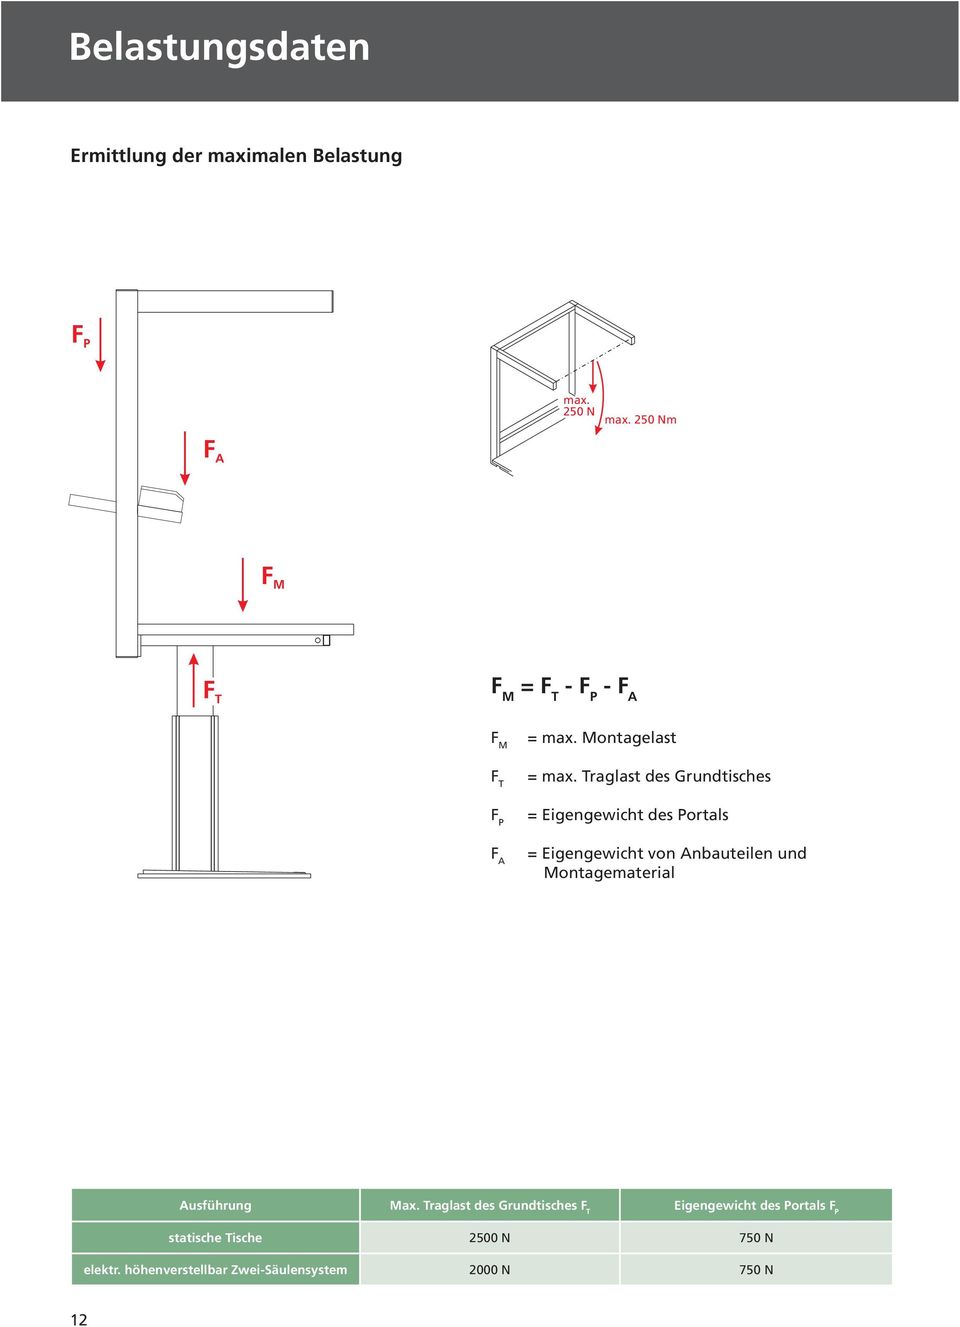 Traglast des Grundtisches = Eigengewicht des Portals = Eigengewicht von Anbauteilen und Montagematerial